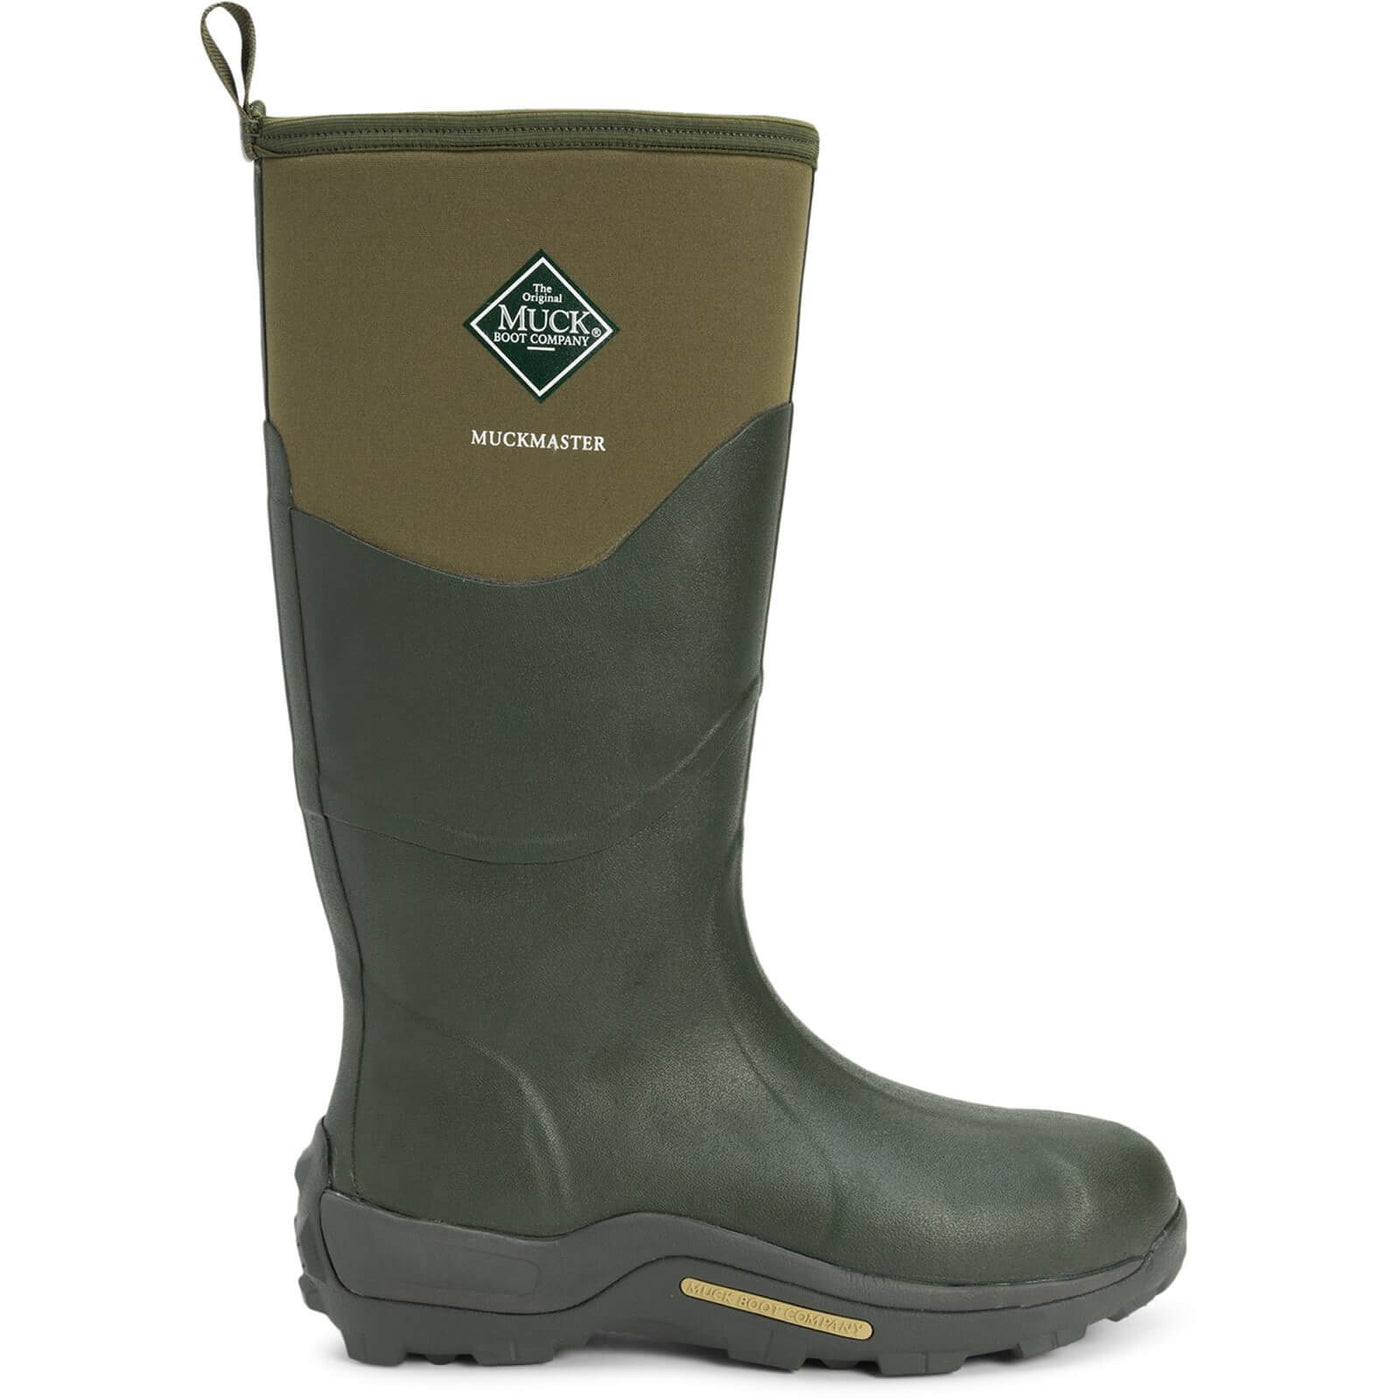 Muck Boots Muckmaster Hi Wellies Moss 5#colour_moss-army-green